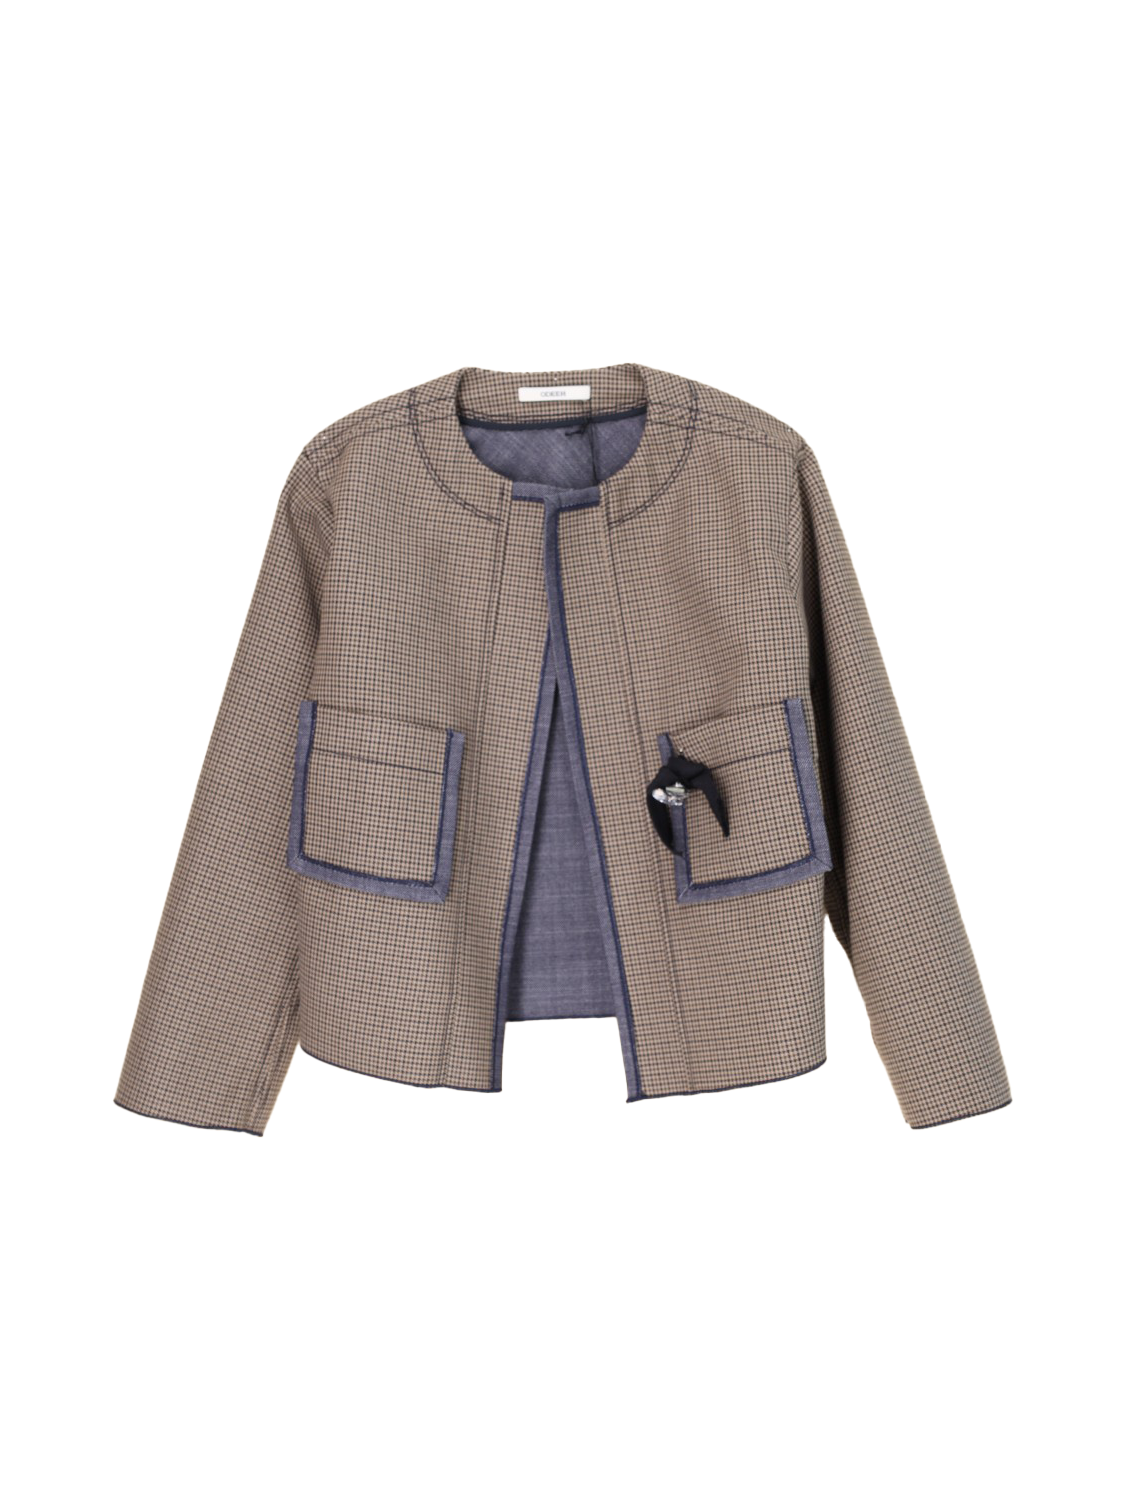 Checkered blazer – cotton jacket 